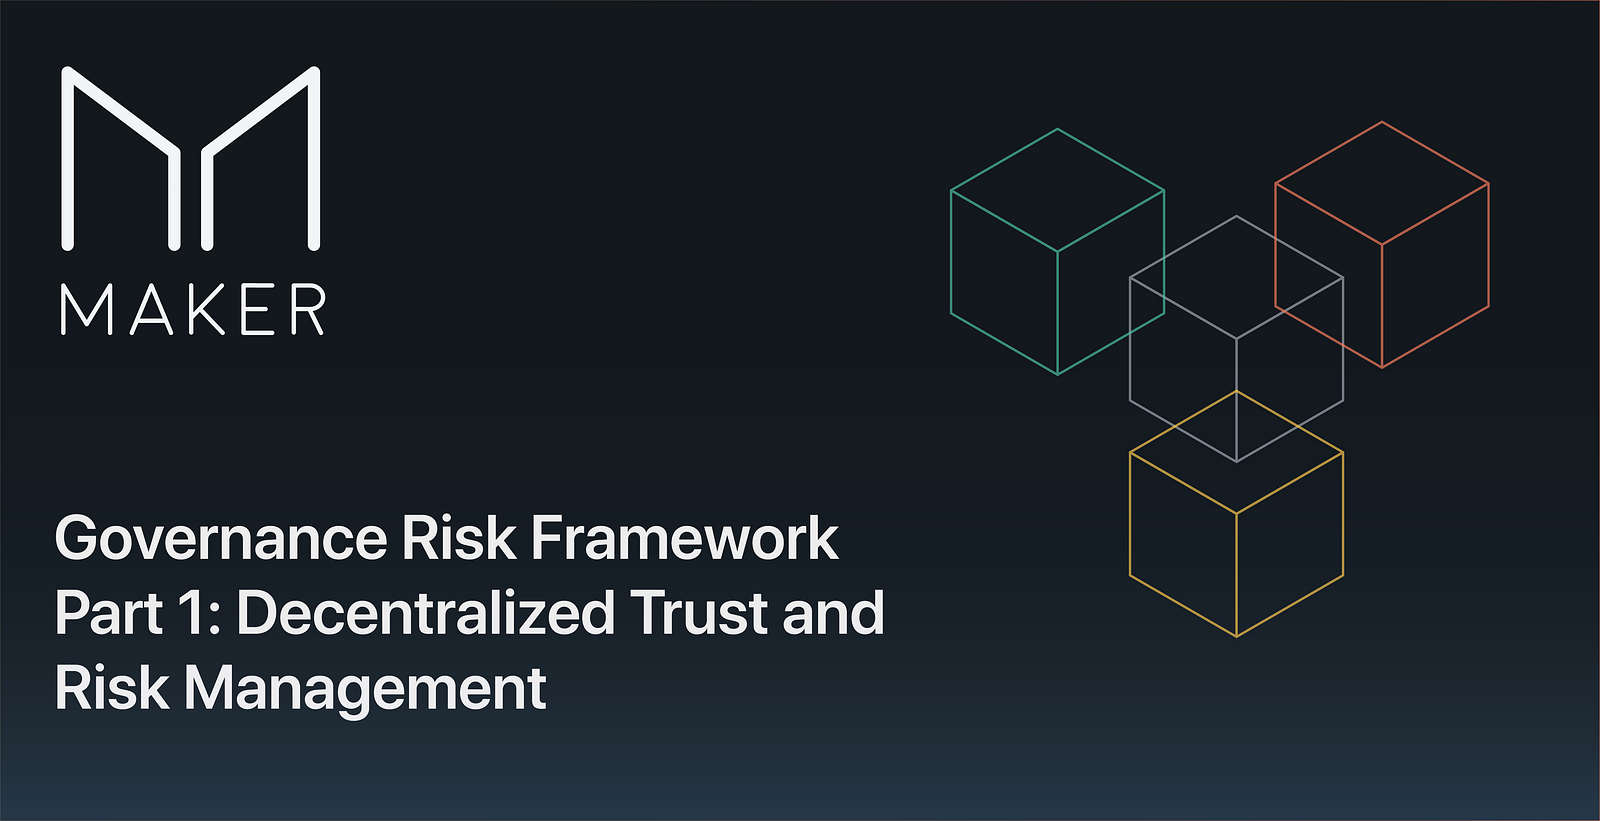 The Governance Risk Framework: Part 1